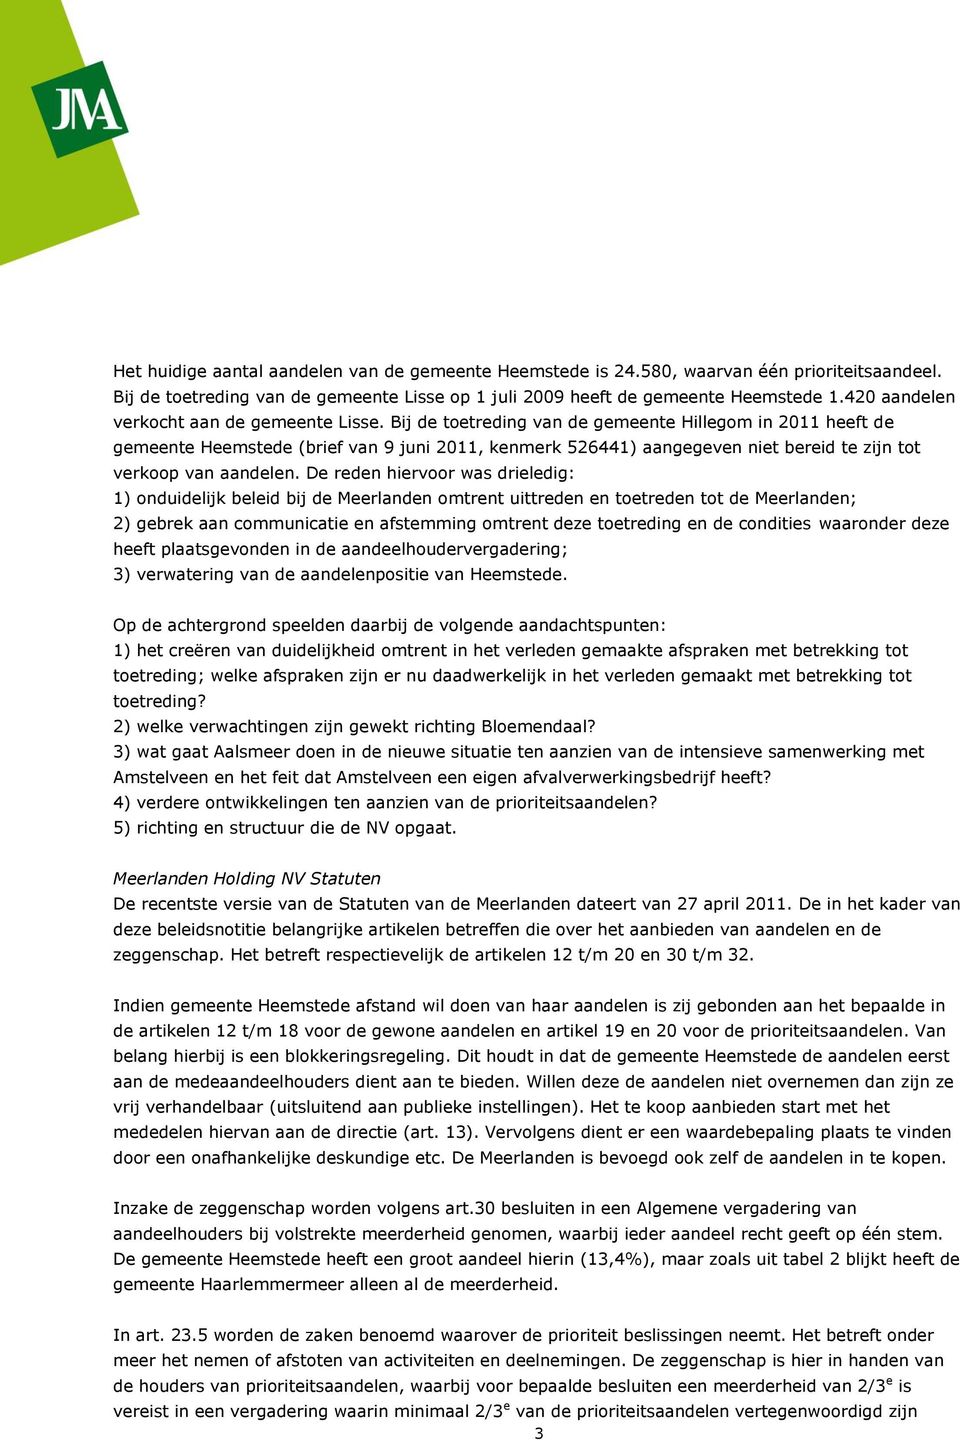 Bij de toetreding van de gemeente Hillegom in 2011 heeft de gemeente Heemstede (brief van 9 juni 2011, kenmerk 526441) aangegeven niet bereid te zijn tot verkoop van aandelen.